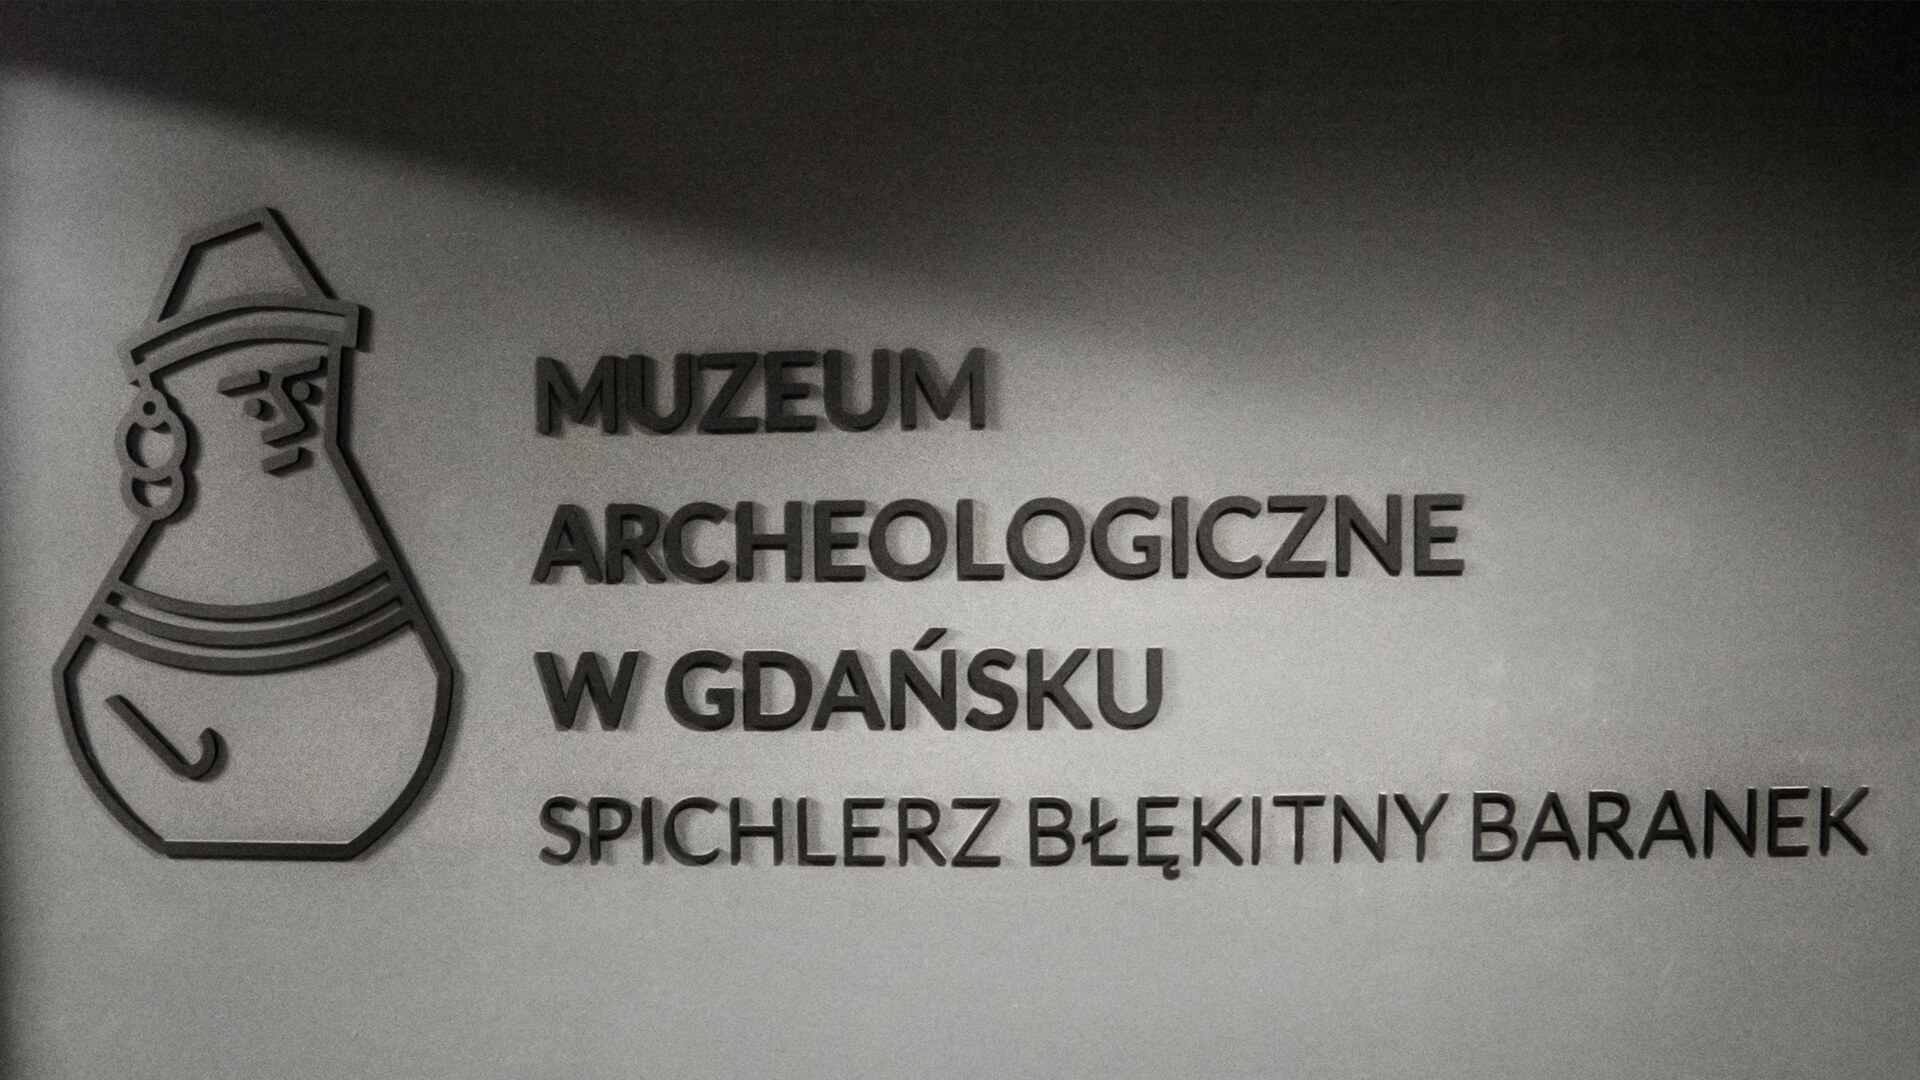 muzeum błękitny baranek - muzeum-archeologiczne-blekitny-baranek-litery-przestrzenne-na-scianie-z-cegiel-wewnatrz-przy-recepcji-czarne-litery-na-zamowienie-litery-matowe-logo-firmowe